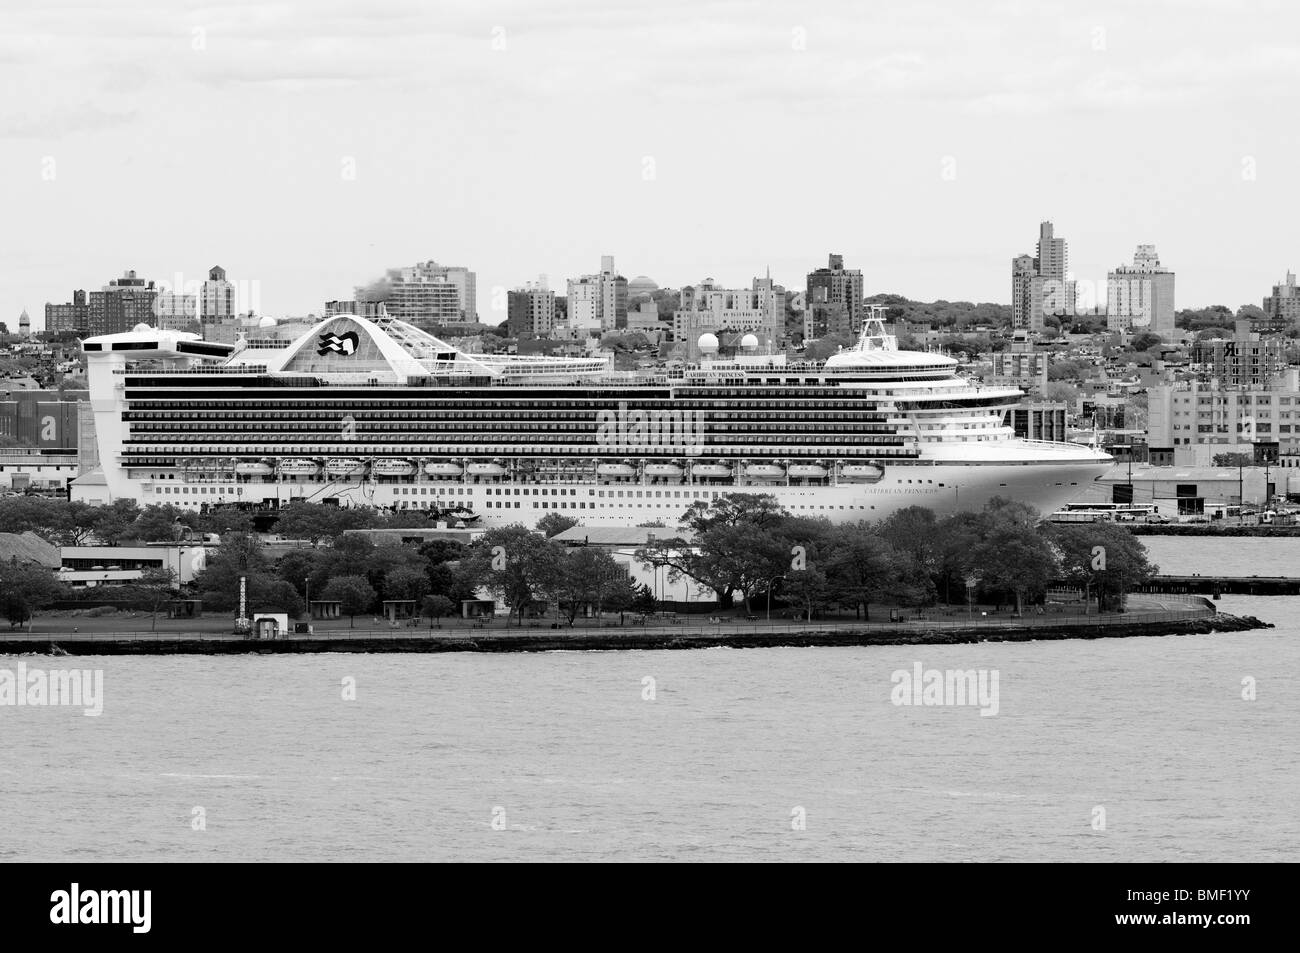 Navire de croisière de luxe liner ancrée dans la ville de New York, New York. Banque D'Images